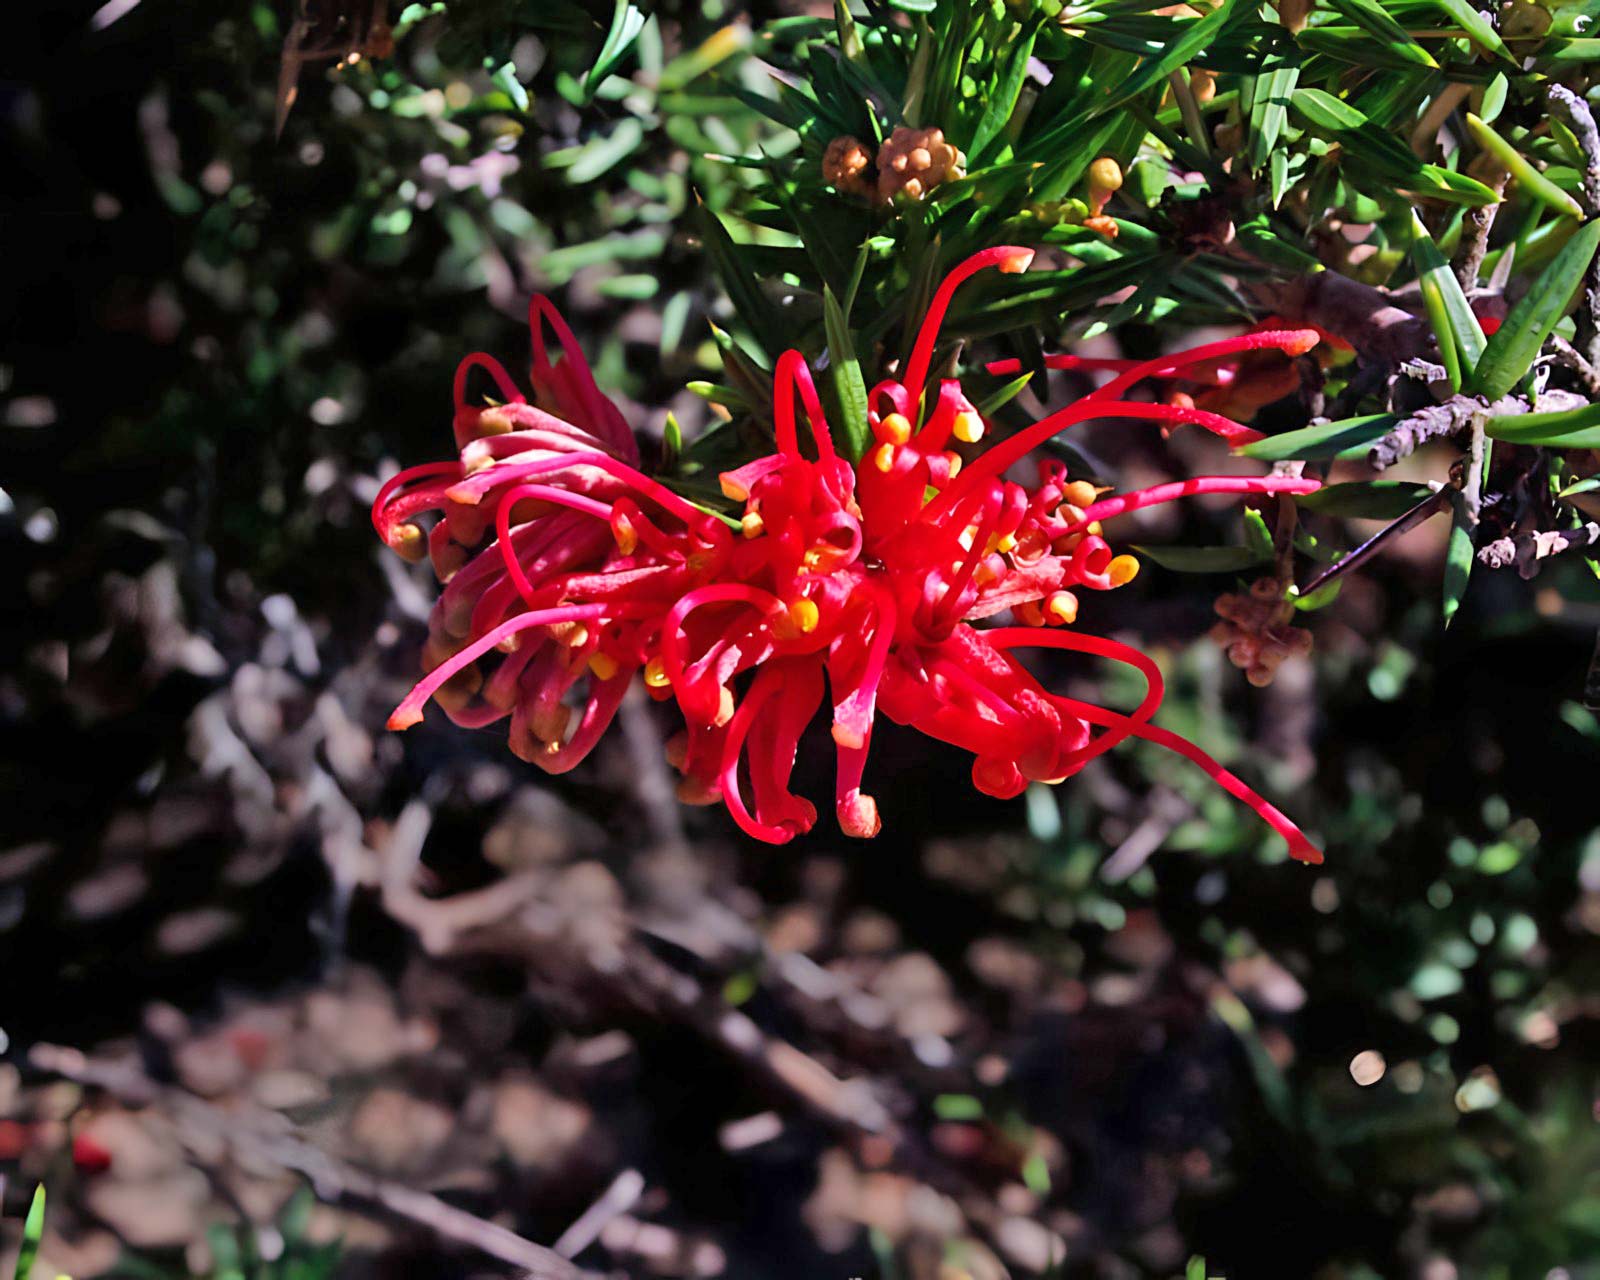 Grevillea juniperina - brilliant red spider-like flowers